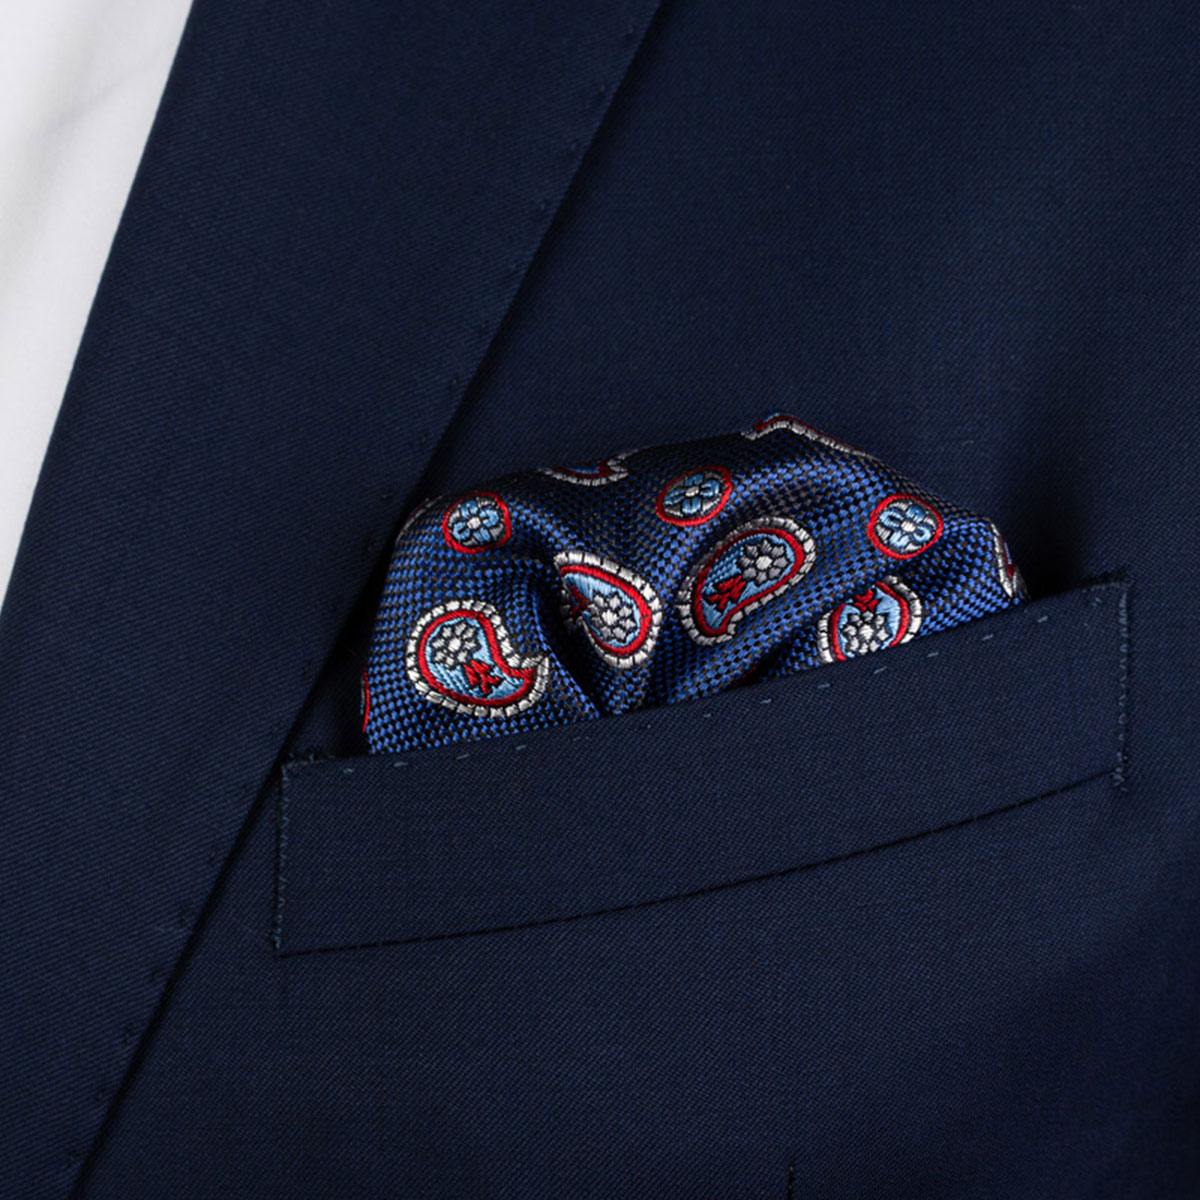 Einstecktuch mit Paisley-Muster in blau-rot in Brusttasche